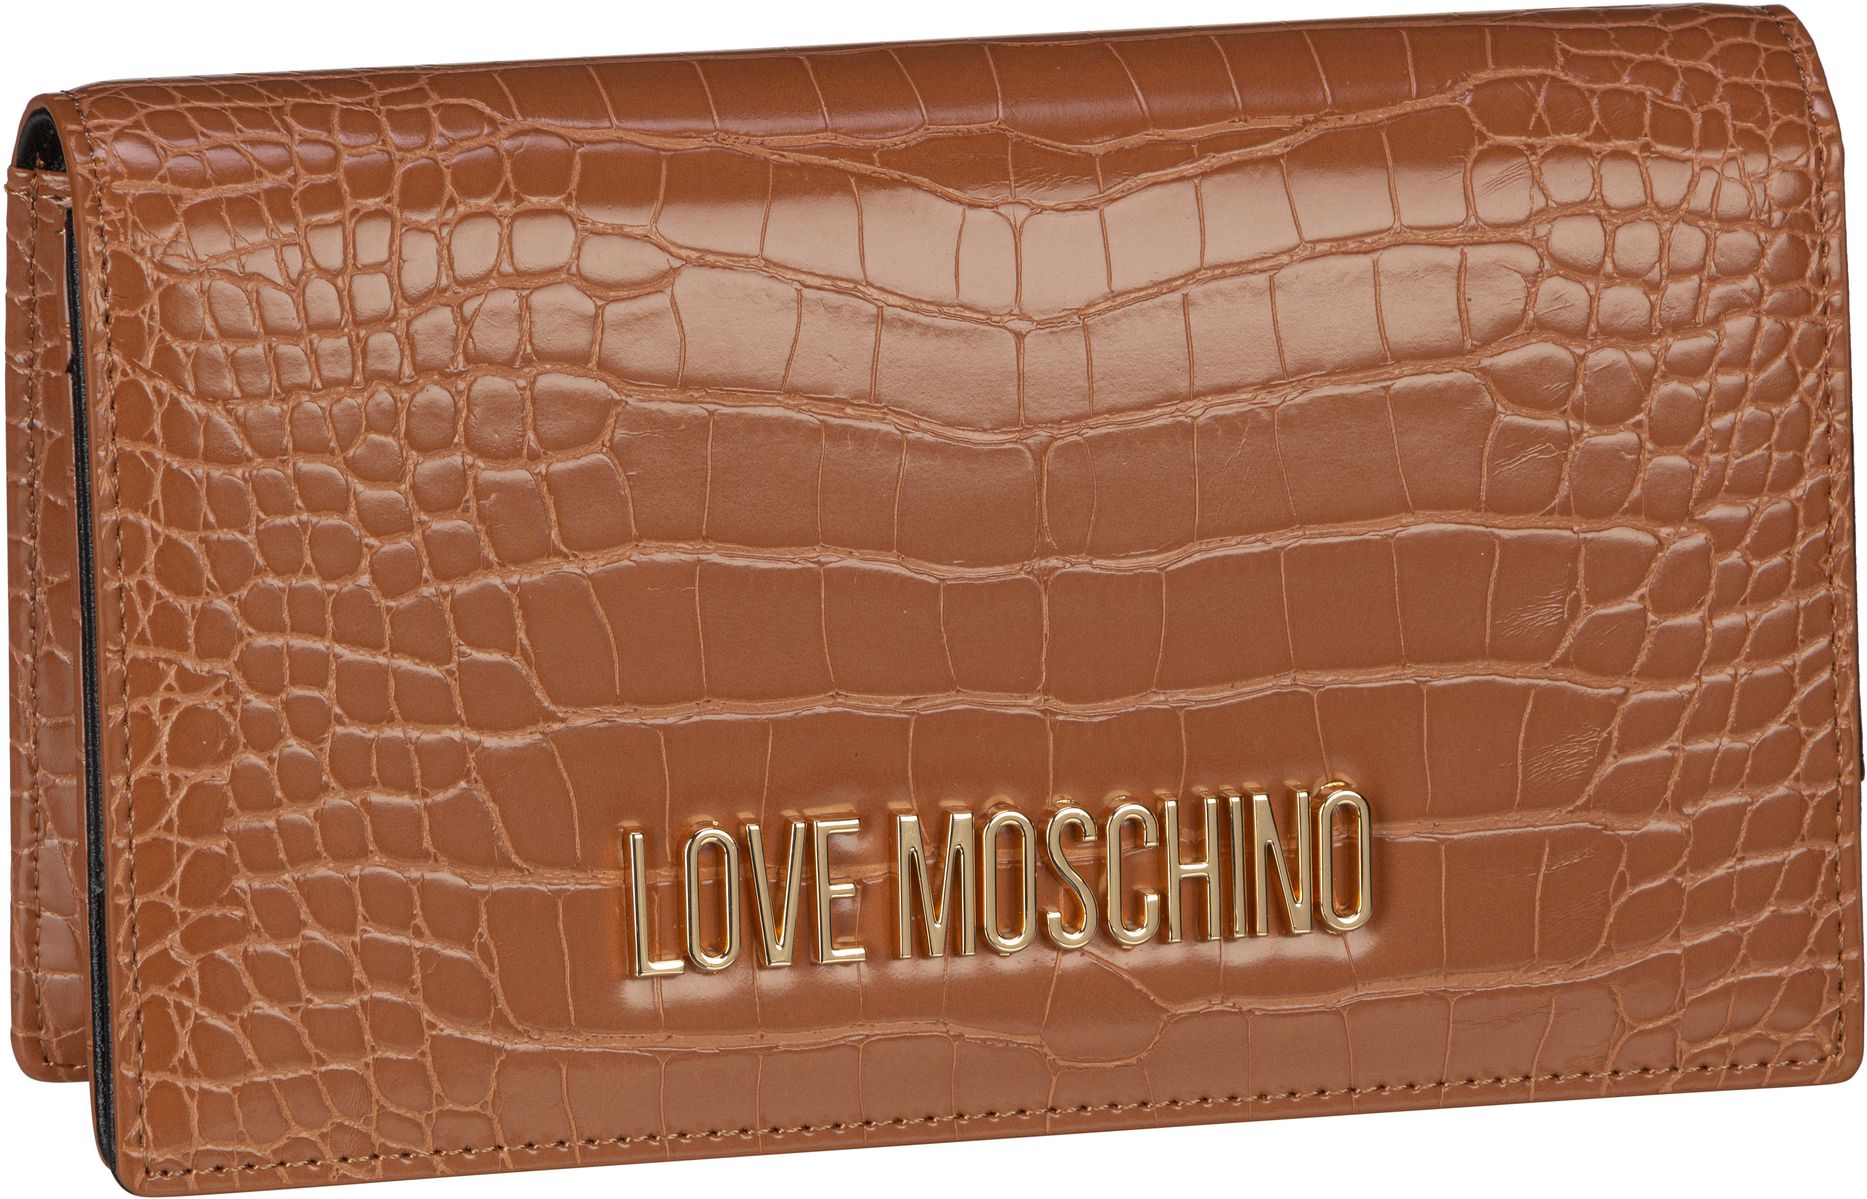 Love Moschino Abendtasche Clutch Evening Bag Croco 4098 Camel (0.9 Liter)  - Onlineshop Taschenkaufhaus